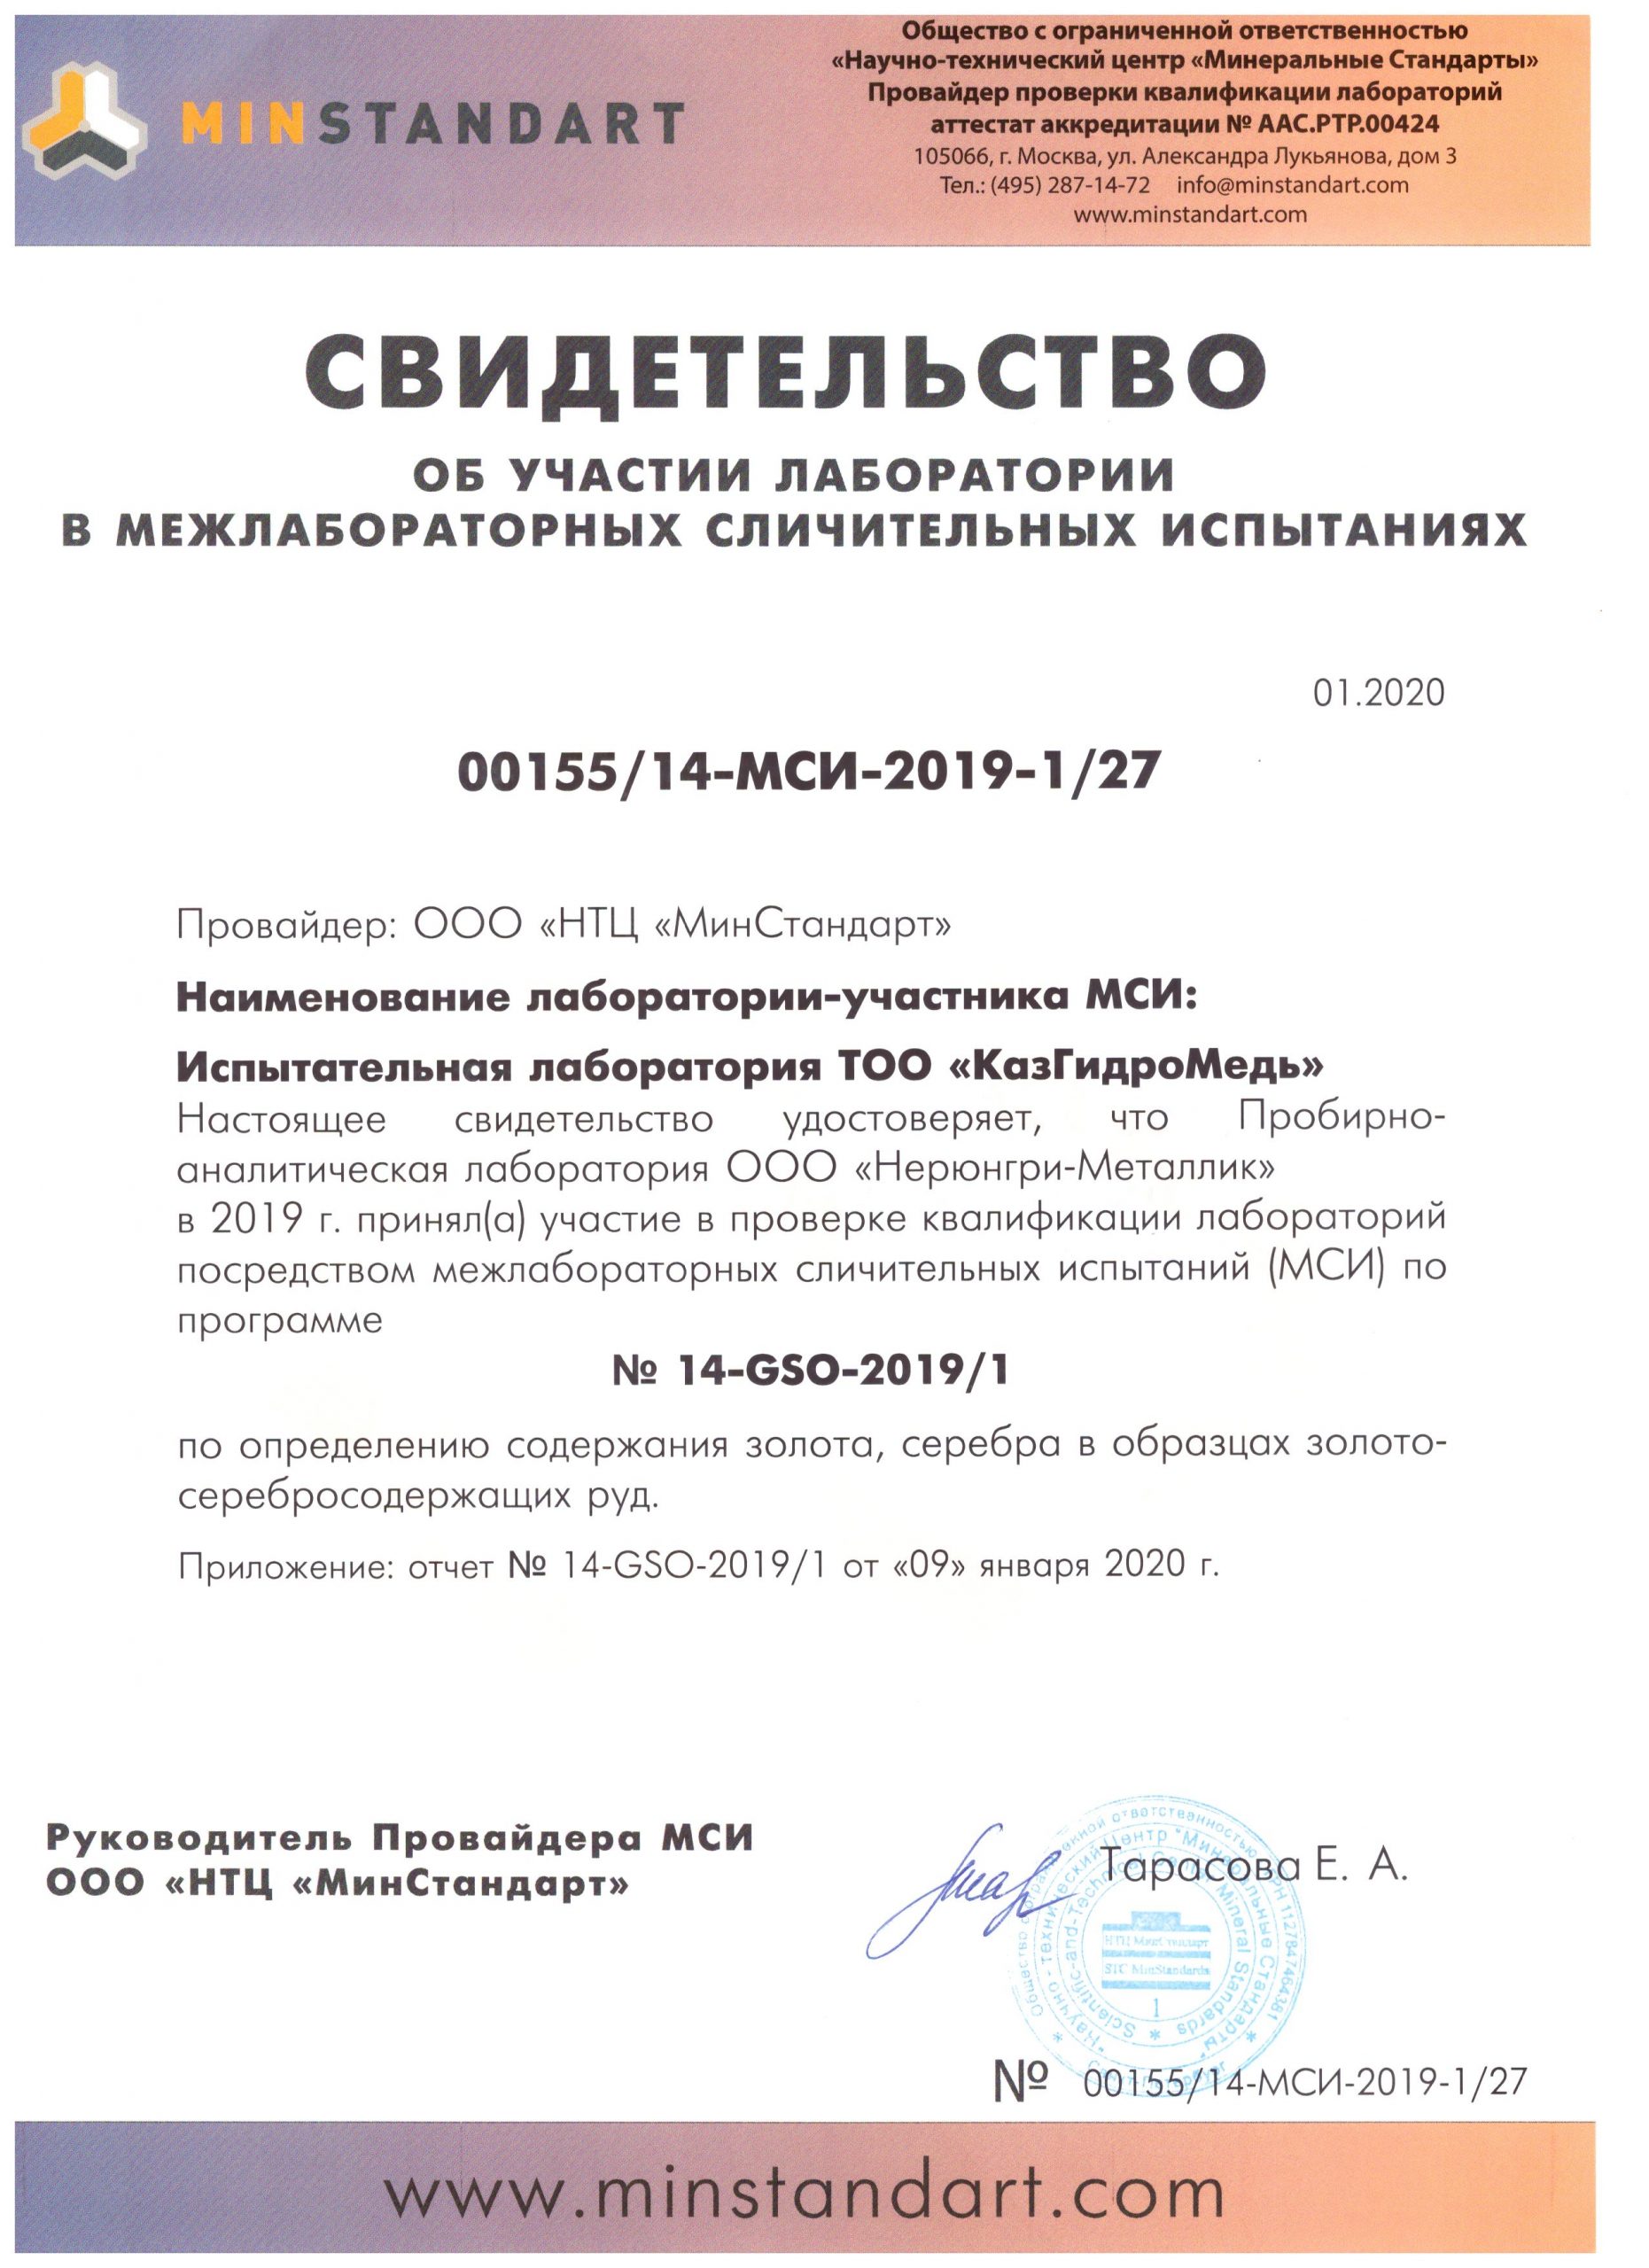 Свидетельство о МЛИ, Москва, 2020